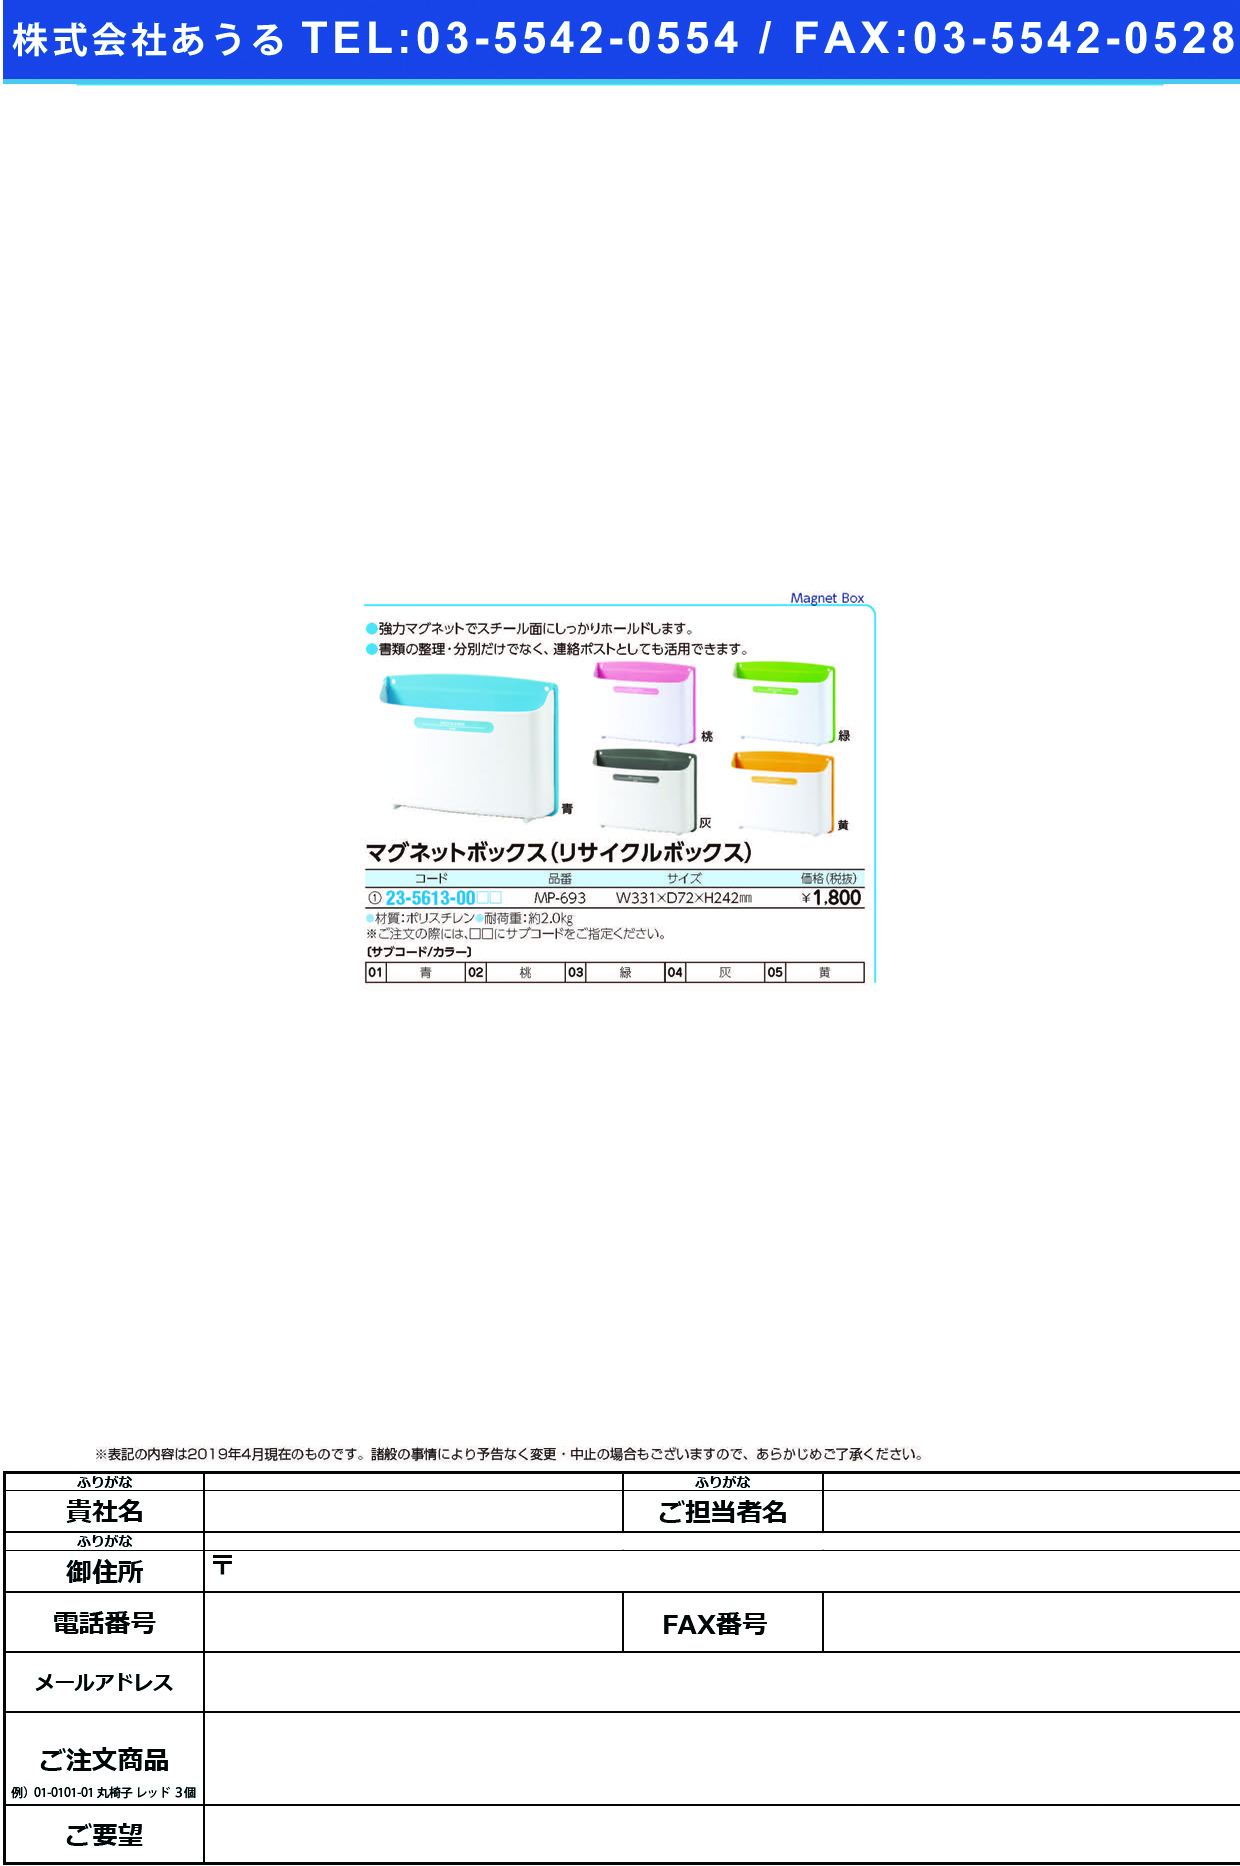 (23-5613-00)マグネットボックス（リサイクルＢＯＸ MP-693 ﾏｸﾞﾈｯﾄﾎﾞｯｸｽ(ﾘｻｲｸﾙBOX 緑【1個単位】【2019年カタログ商品】